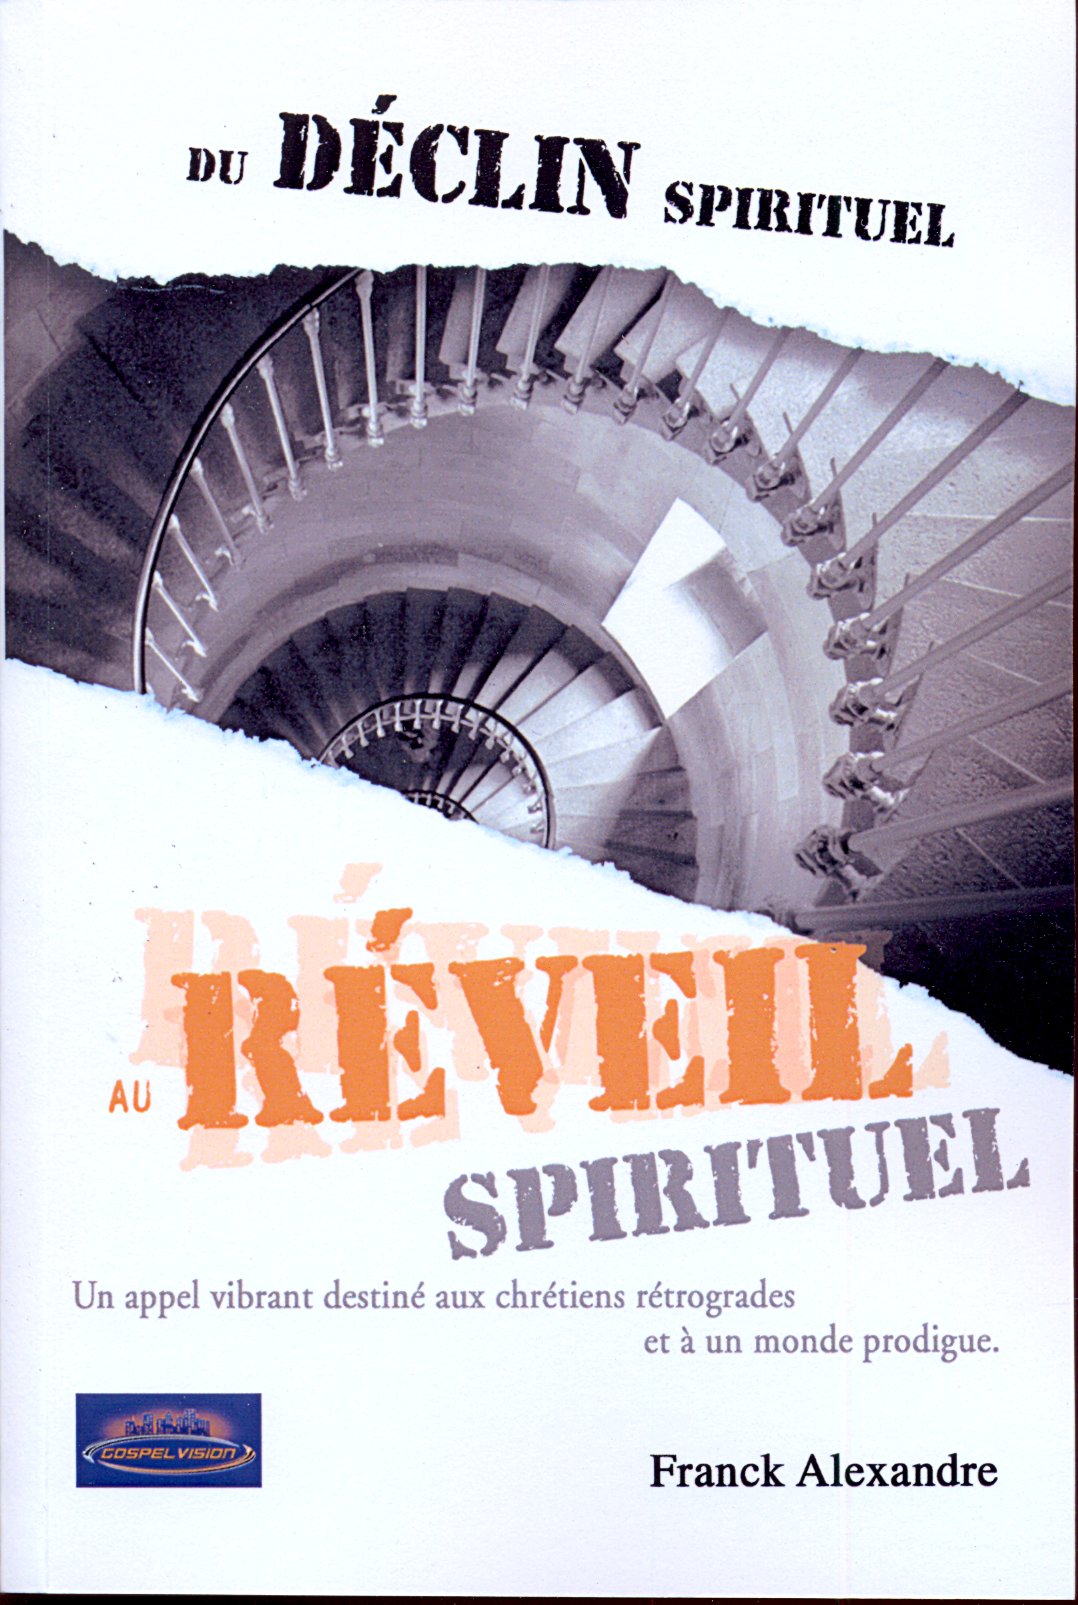 Du déclin spirituel au réveil spirituel